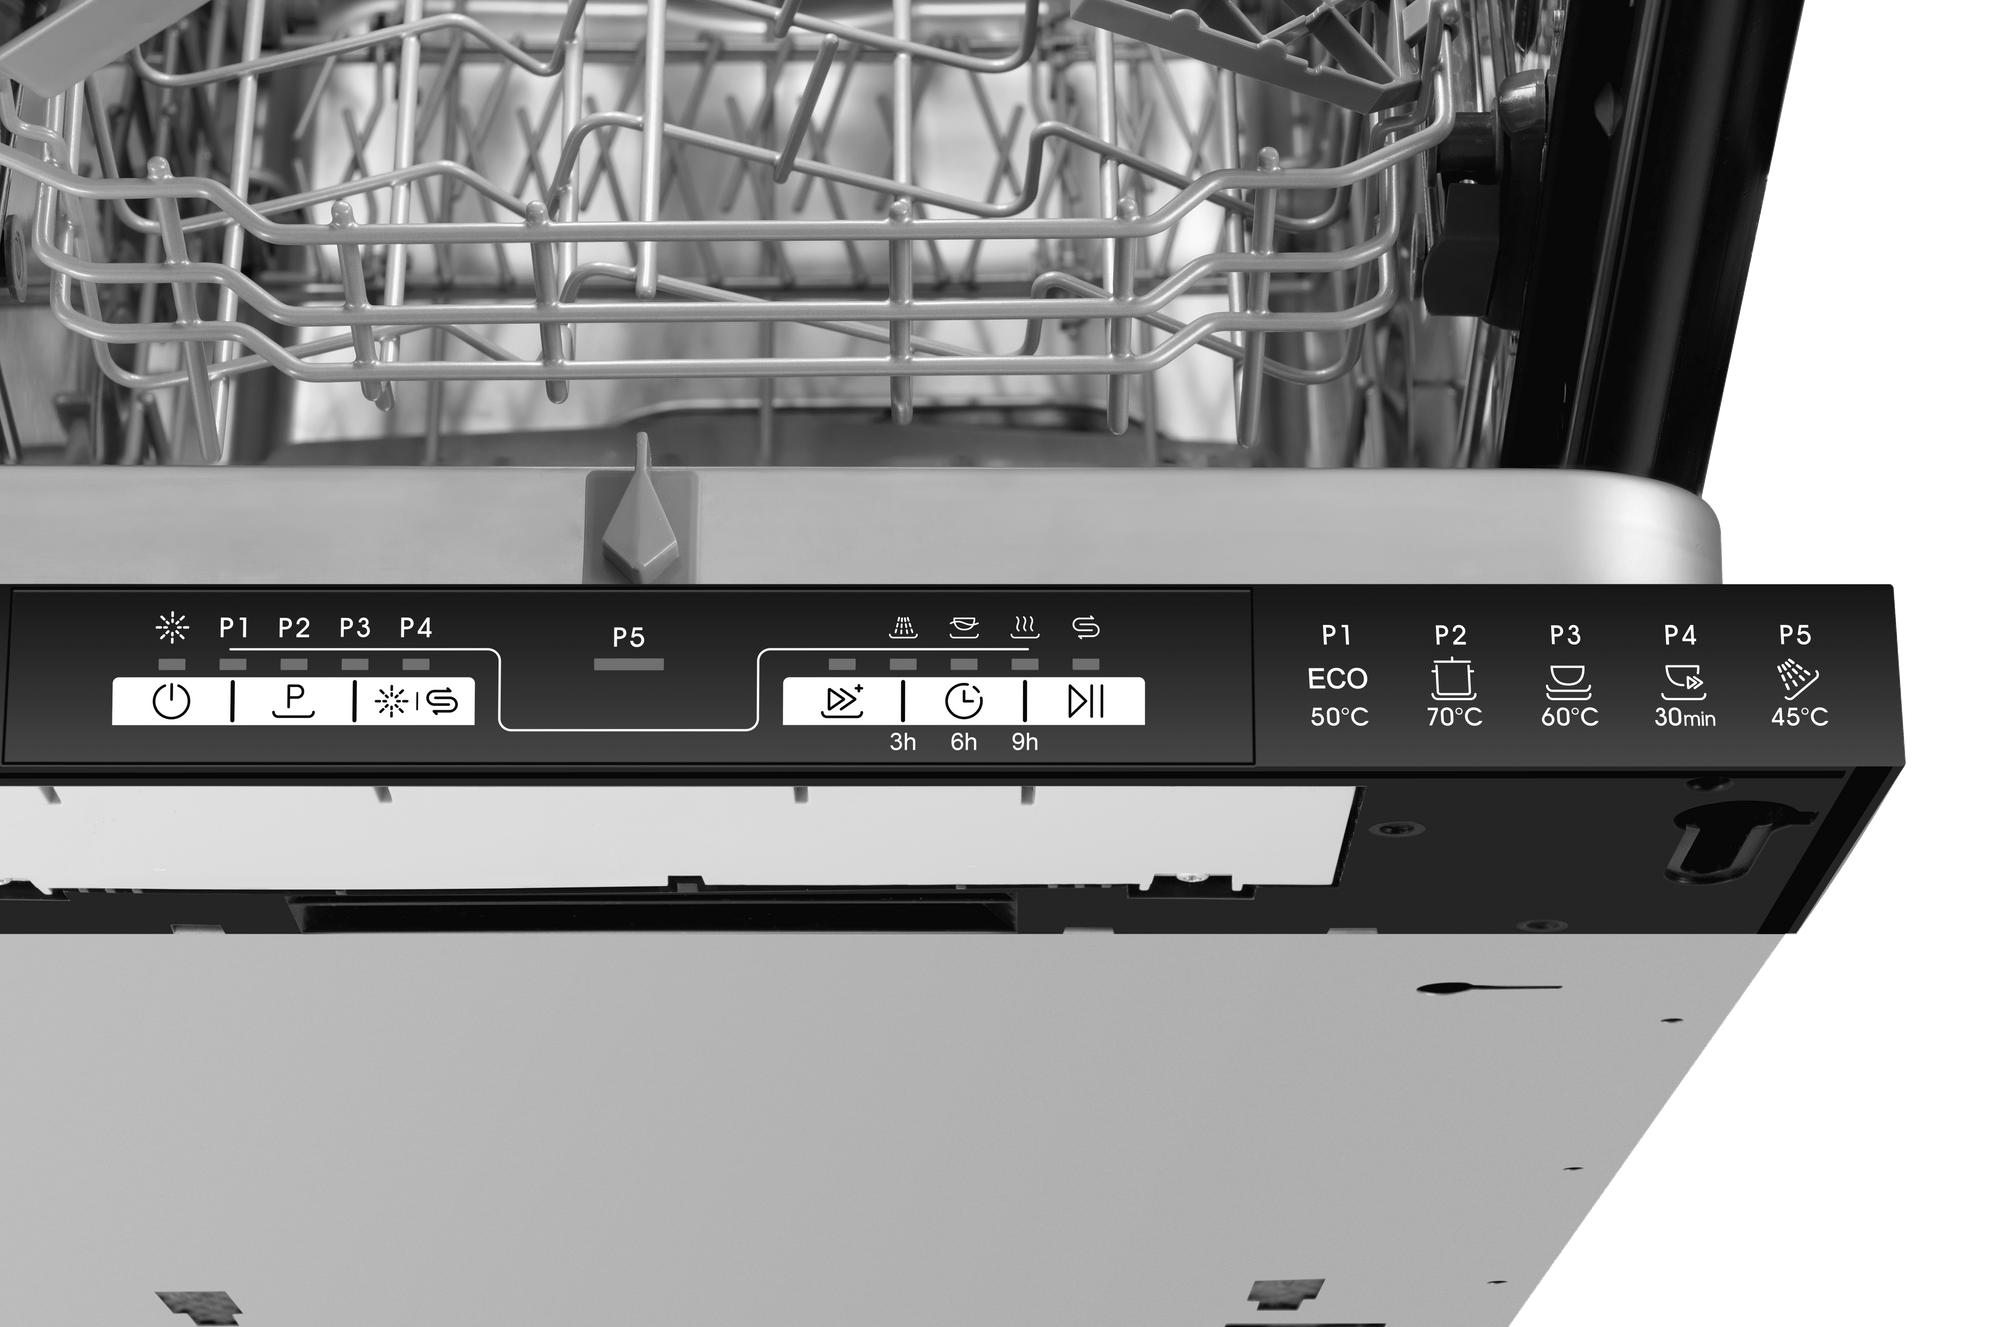 Встраиваемая посудомоечная машина Haier HDWE9-191RU